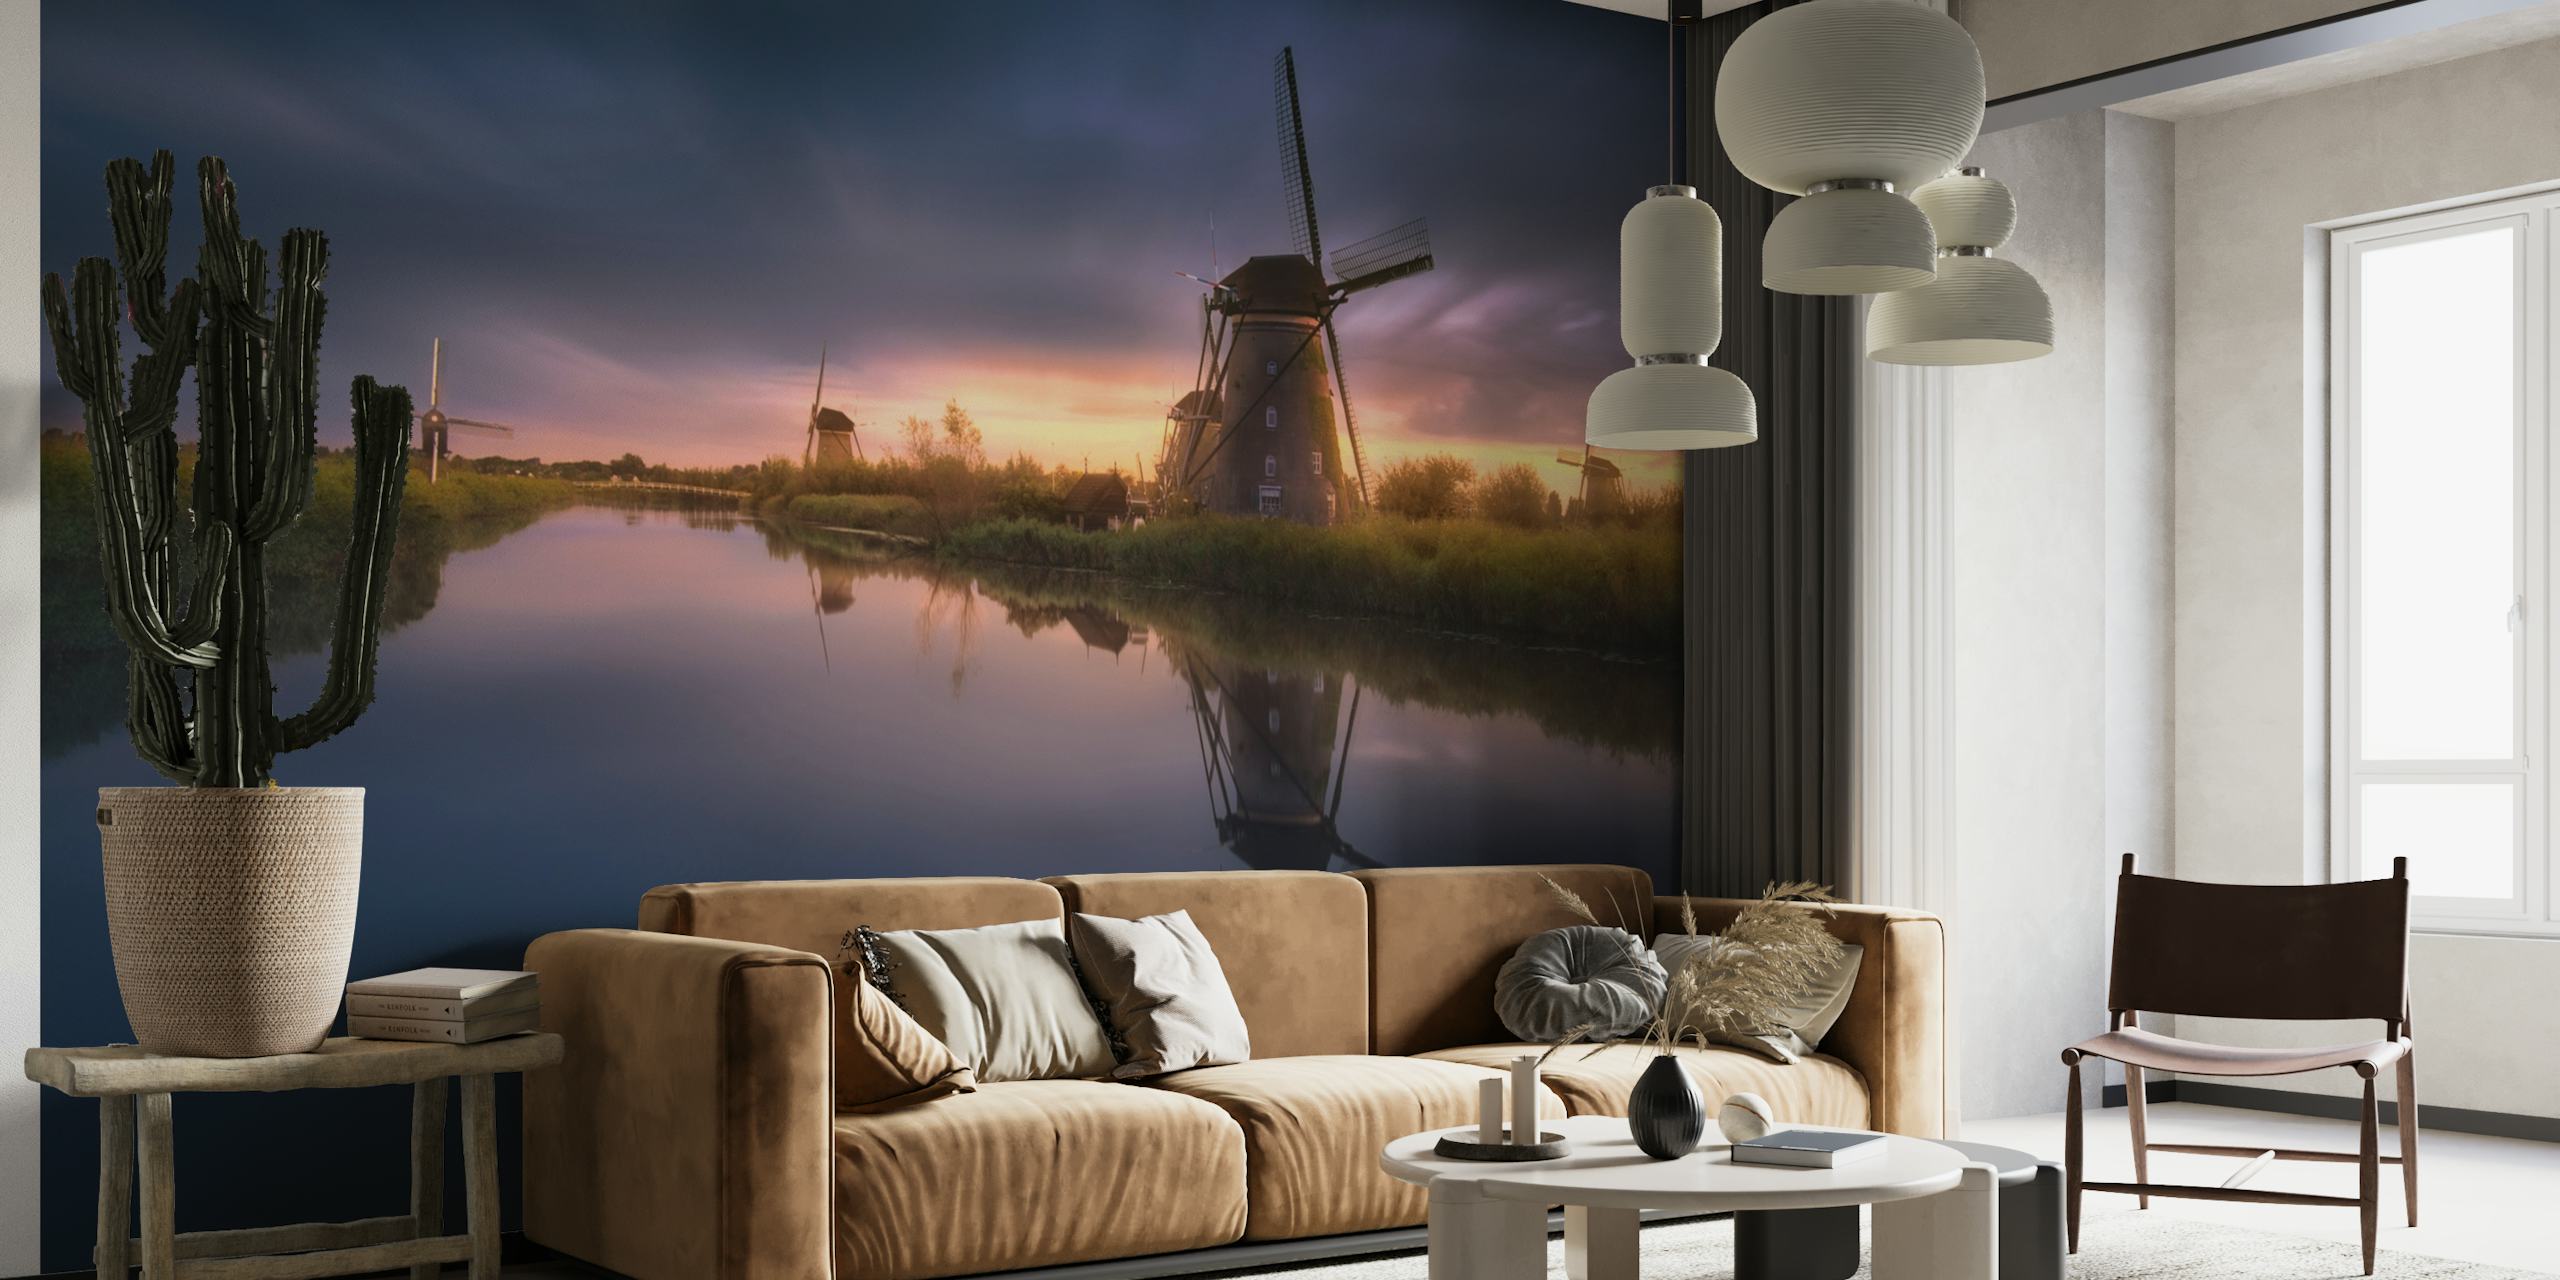 Zidna slika Kinderdijk Windmills s pozadinom zalaska sunca koja se odražava u mirnoj vodi